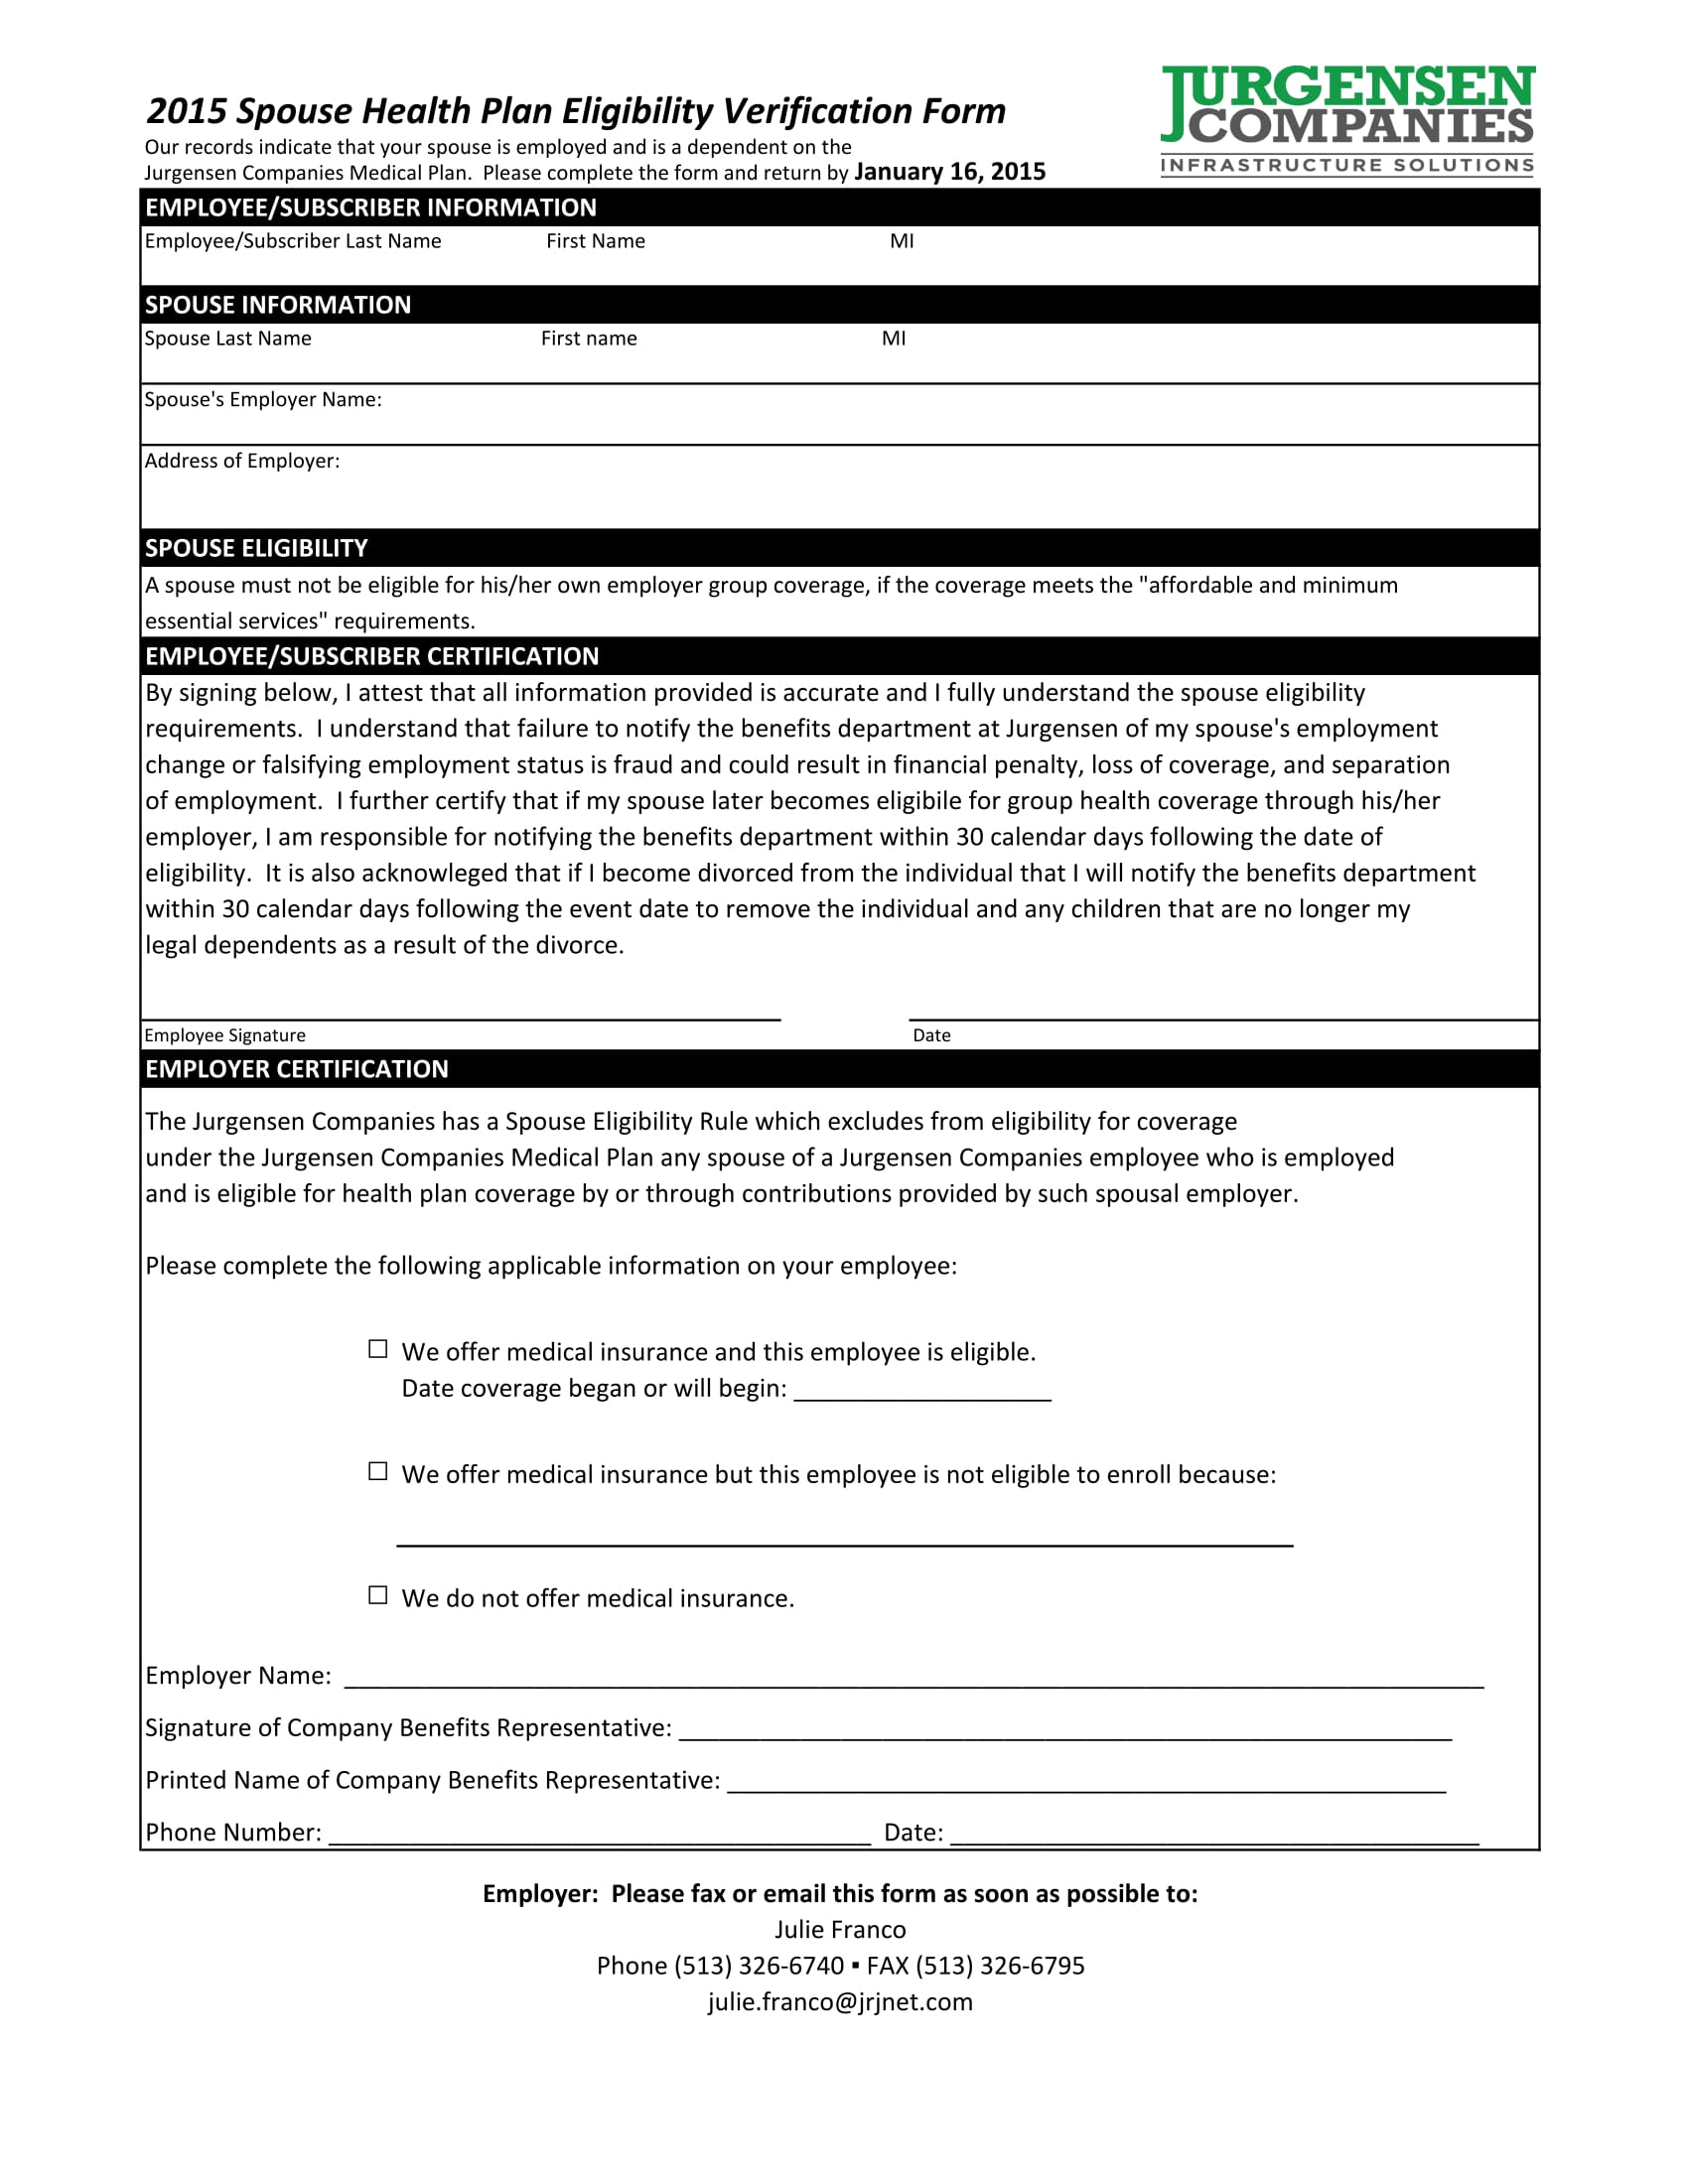 spouse eligibility verification form 1